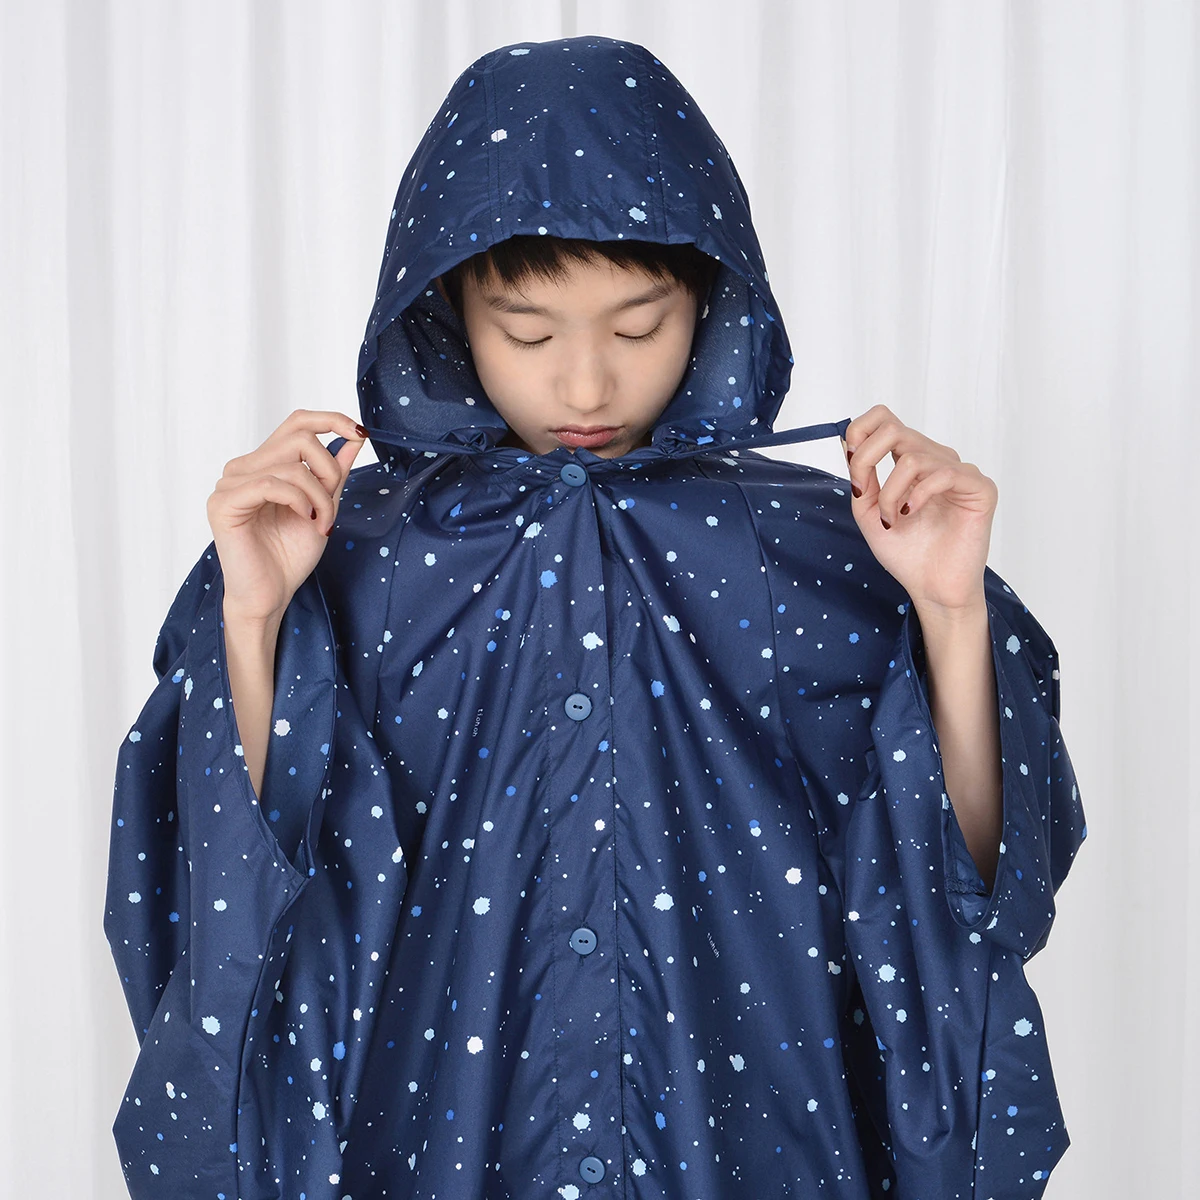 Tiohoh женский дождевик с голубыми чернилами, ветровка для девушек, дождевик, дождевик для взрослых, дождевик, Женская куртка, Abrigo Mujer, брендовый дождевик - Цвет: Navy